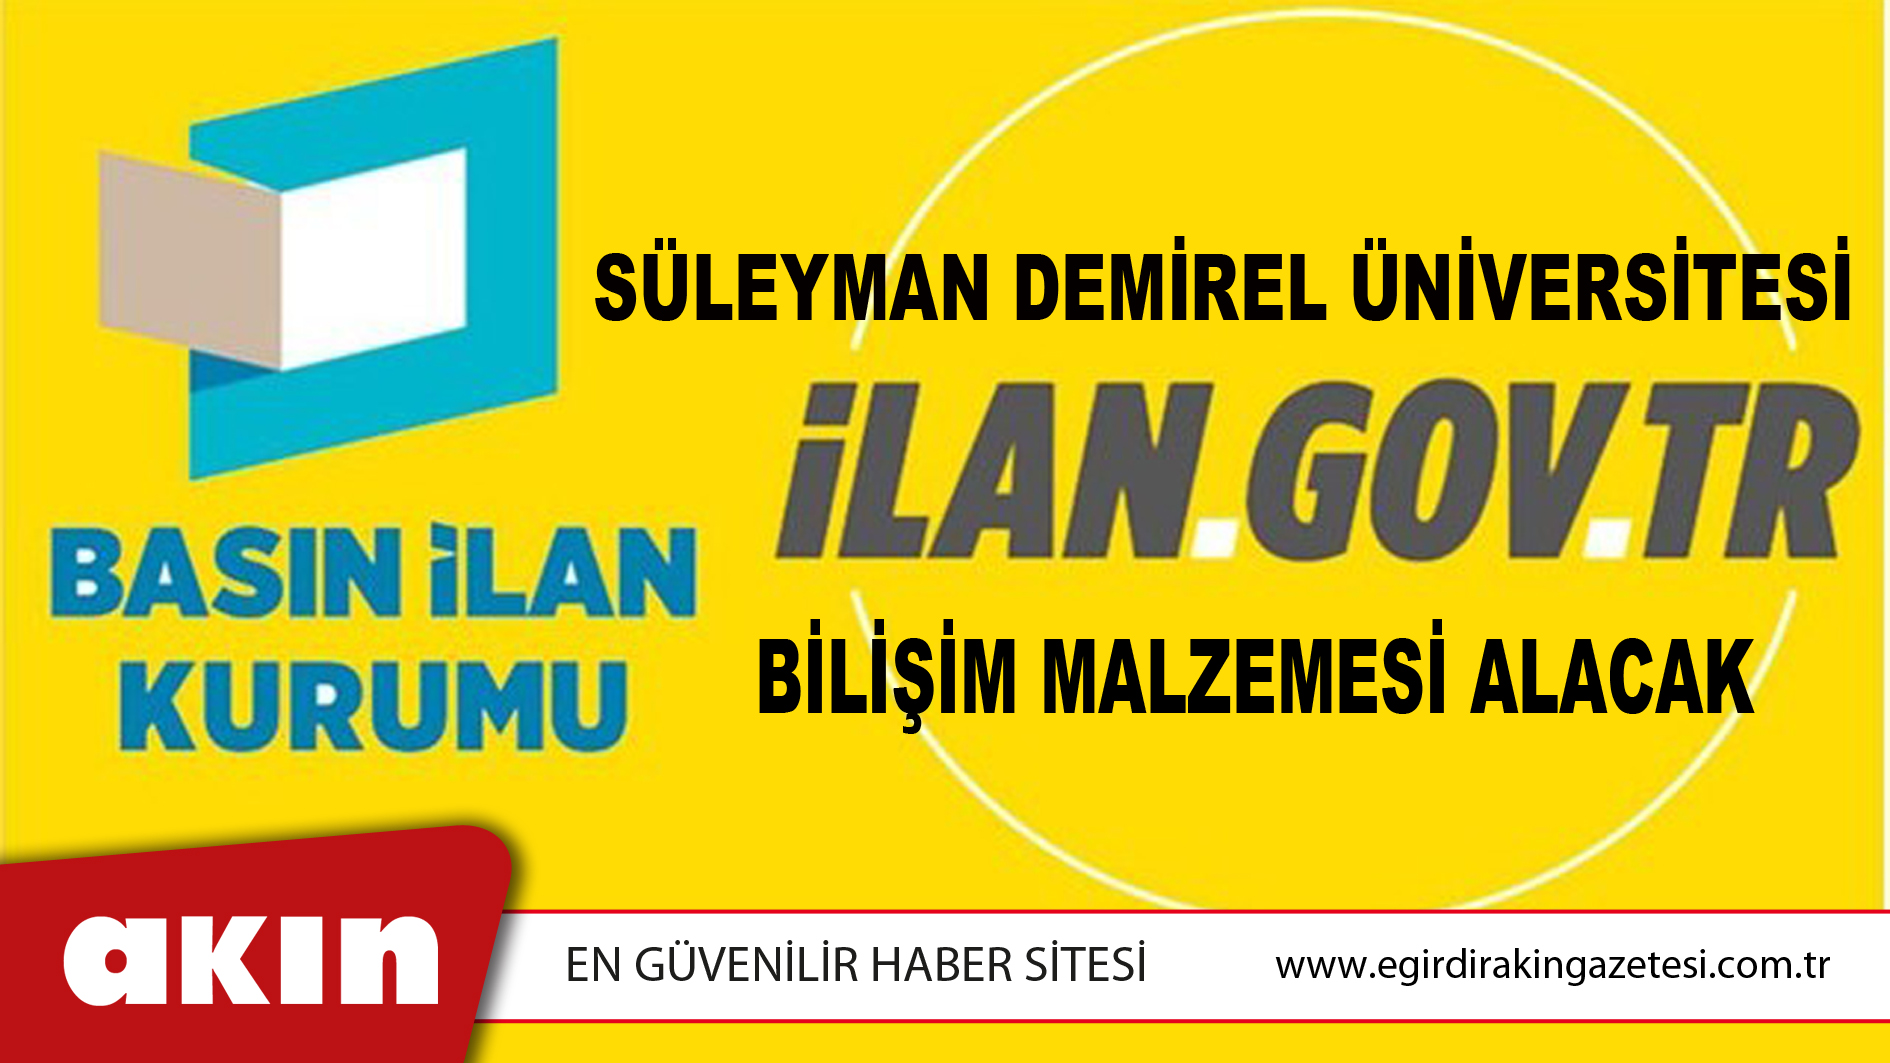 eğirdir haber,akın gazetesi,egirdir haberler,son dakika,Süleyman Demirel Üniversitesi Bilişim Malzemesi Alacak